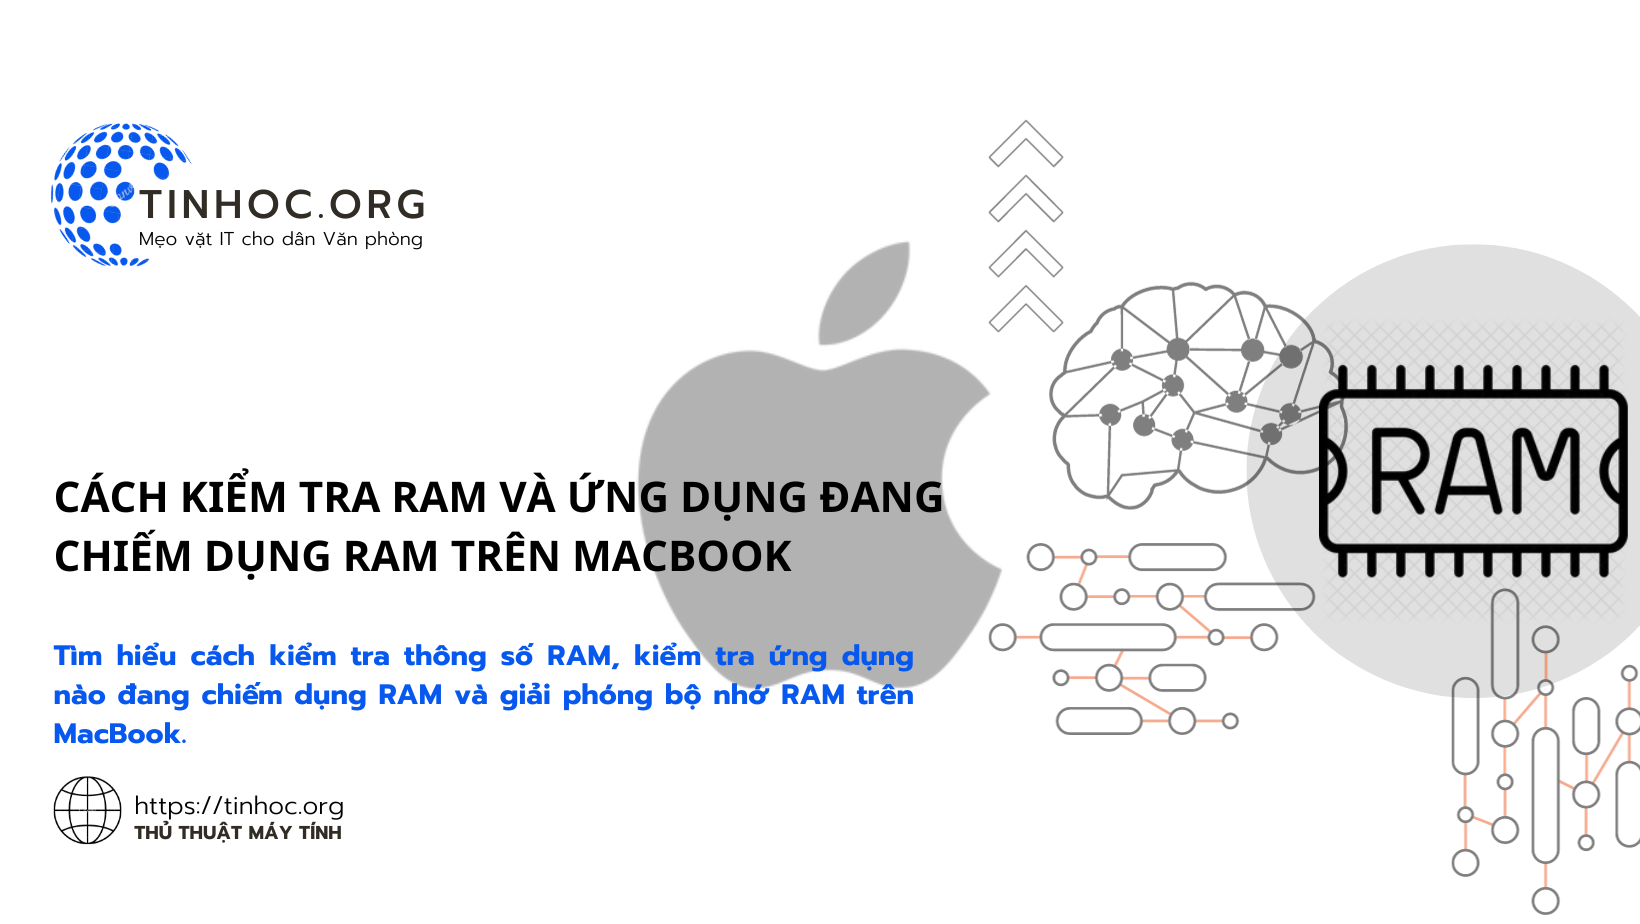 Tìm hiểu cách kiểm tra thông số RAM, kiểm tra ứng dụng nào đang chiếm dụng RAM và giải phóng bộ nhớ RAM trên MacBook.